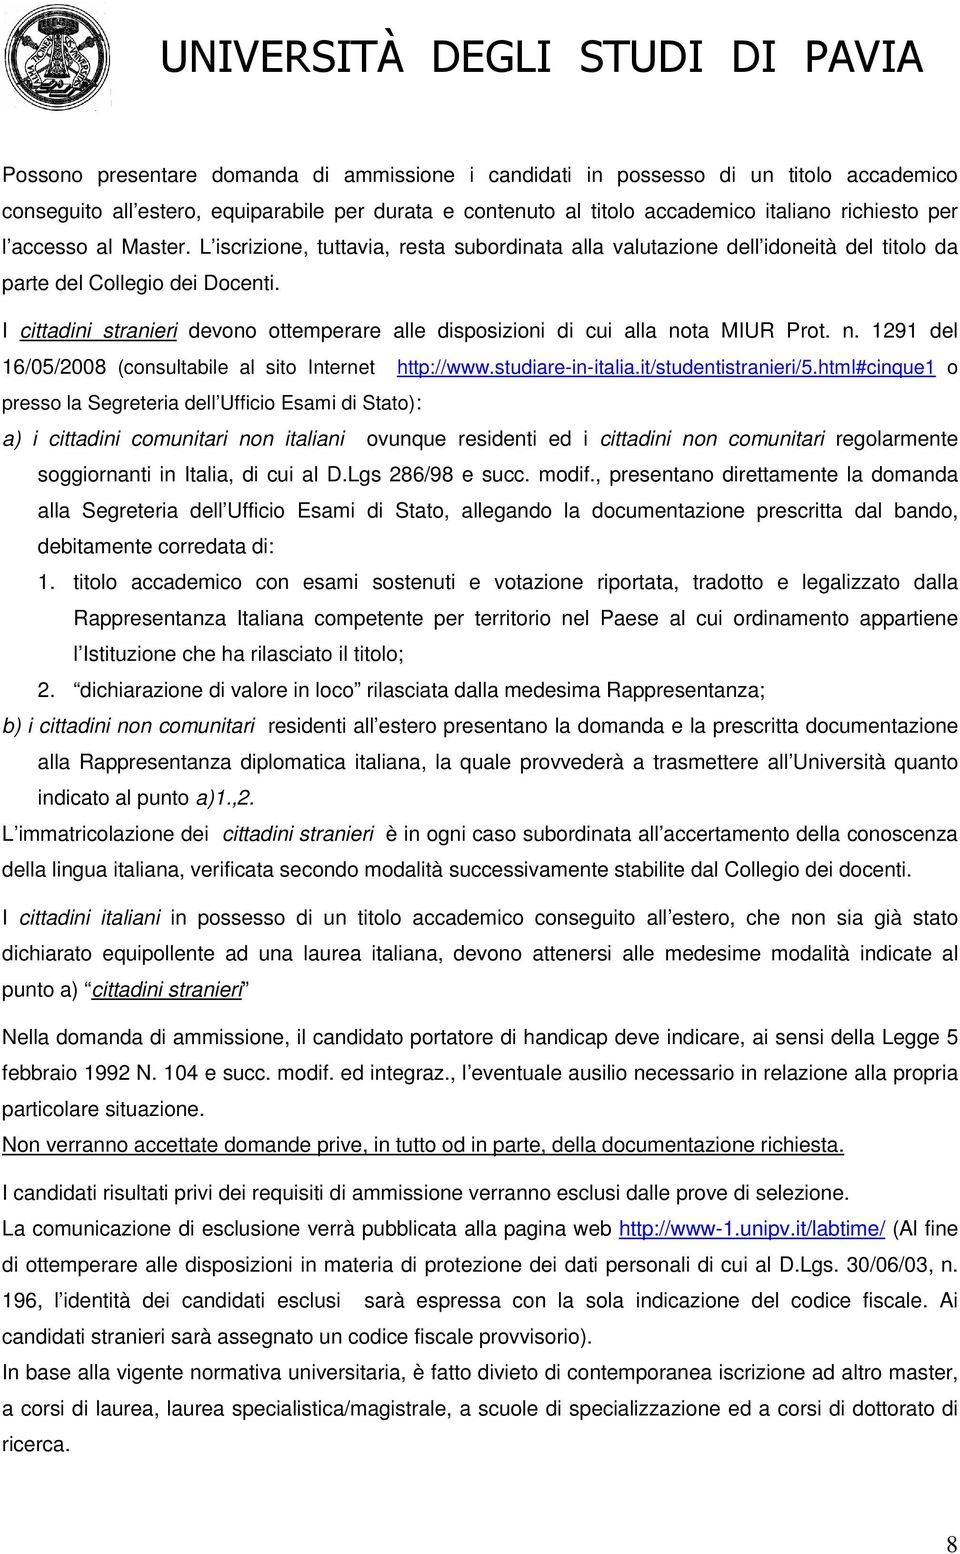 I cittadini stranieri devono ottemperare alle disposizioni di cui alla nota MIUR Prot. n. 1291 del 16/05/2008 (consultabile al sito Internet http://www.studiare-in-italia.it/studentistranieri/5.